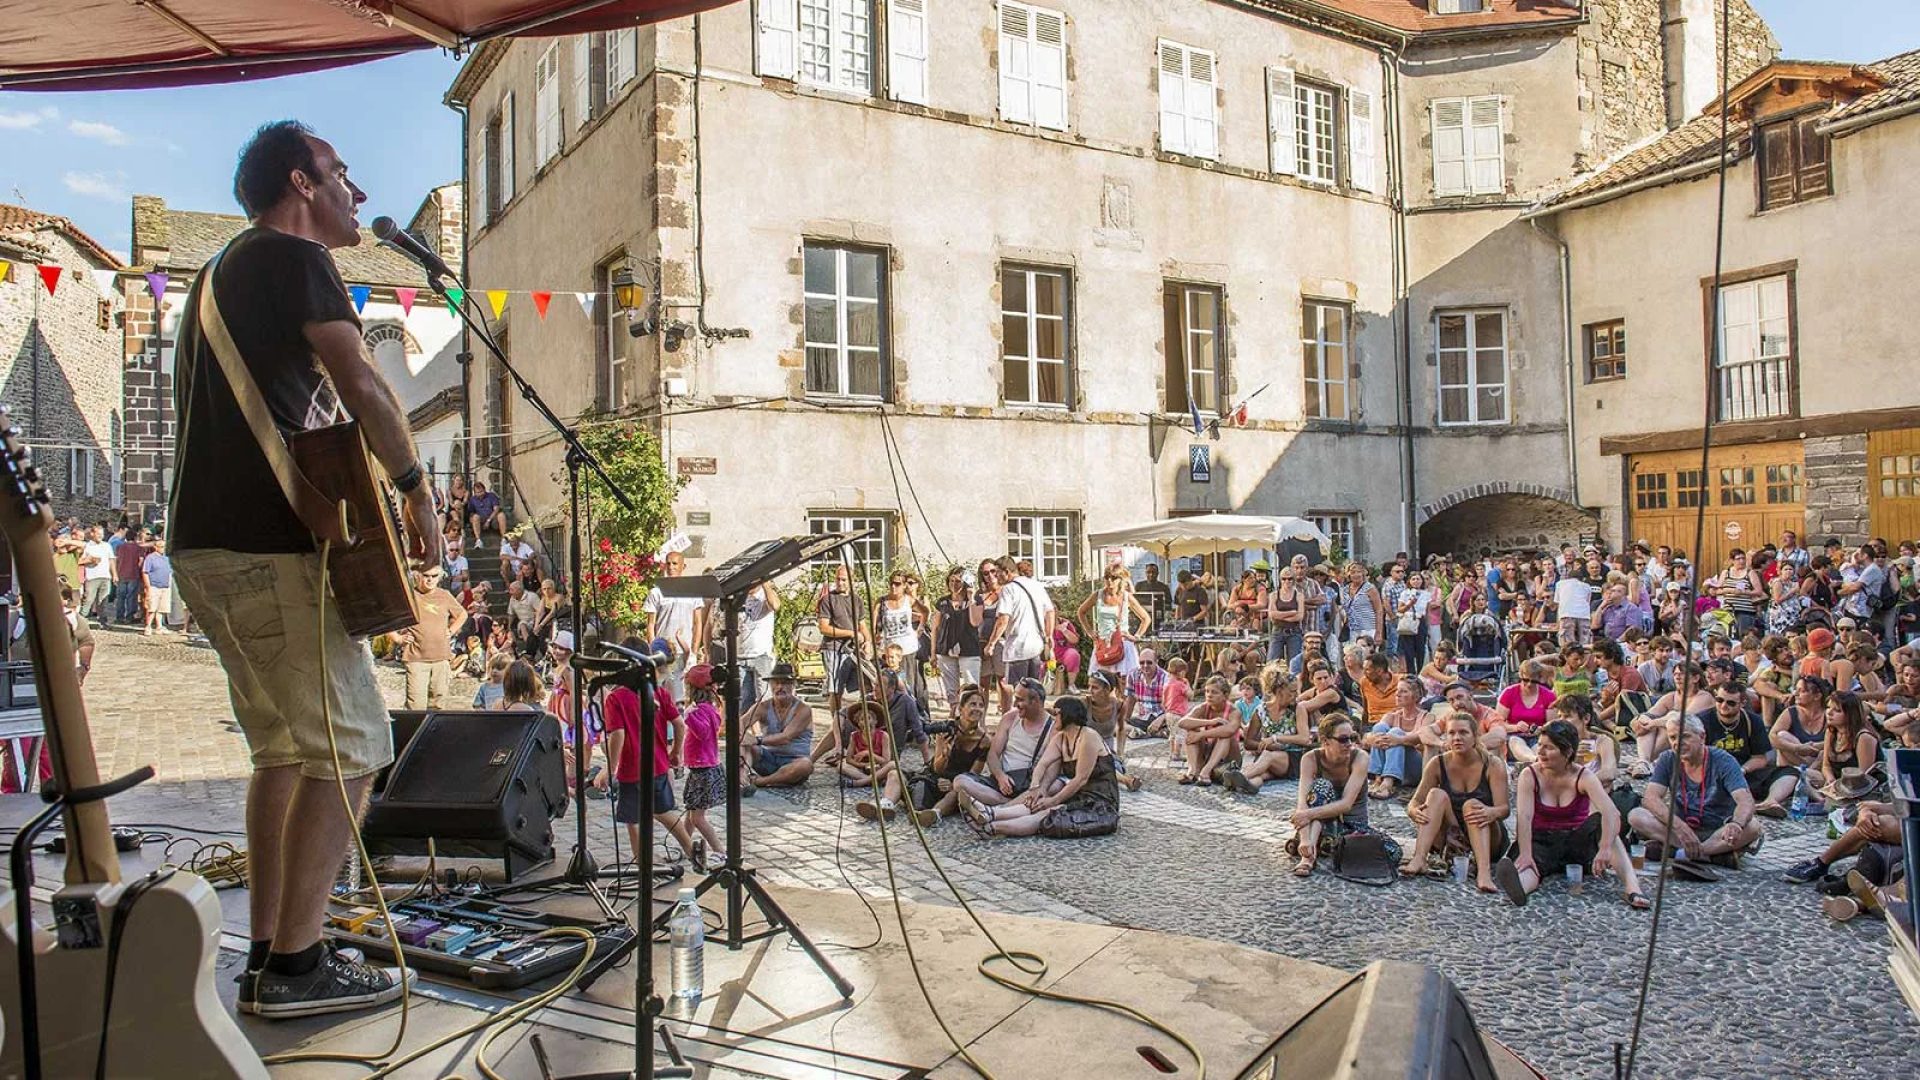 Un cantante actúa en un escenario al aire libre frente a una multitud de personas sentadas en el Apéros musique de Blesle en Haute-Loire, Auvernia.